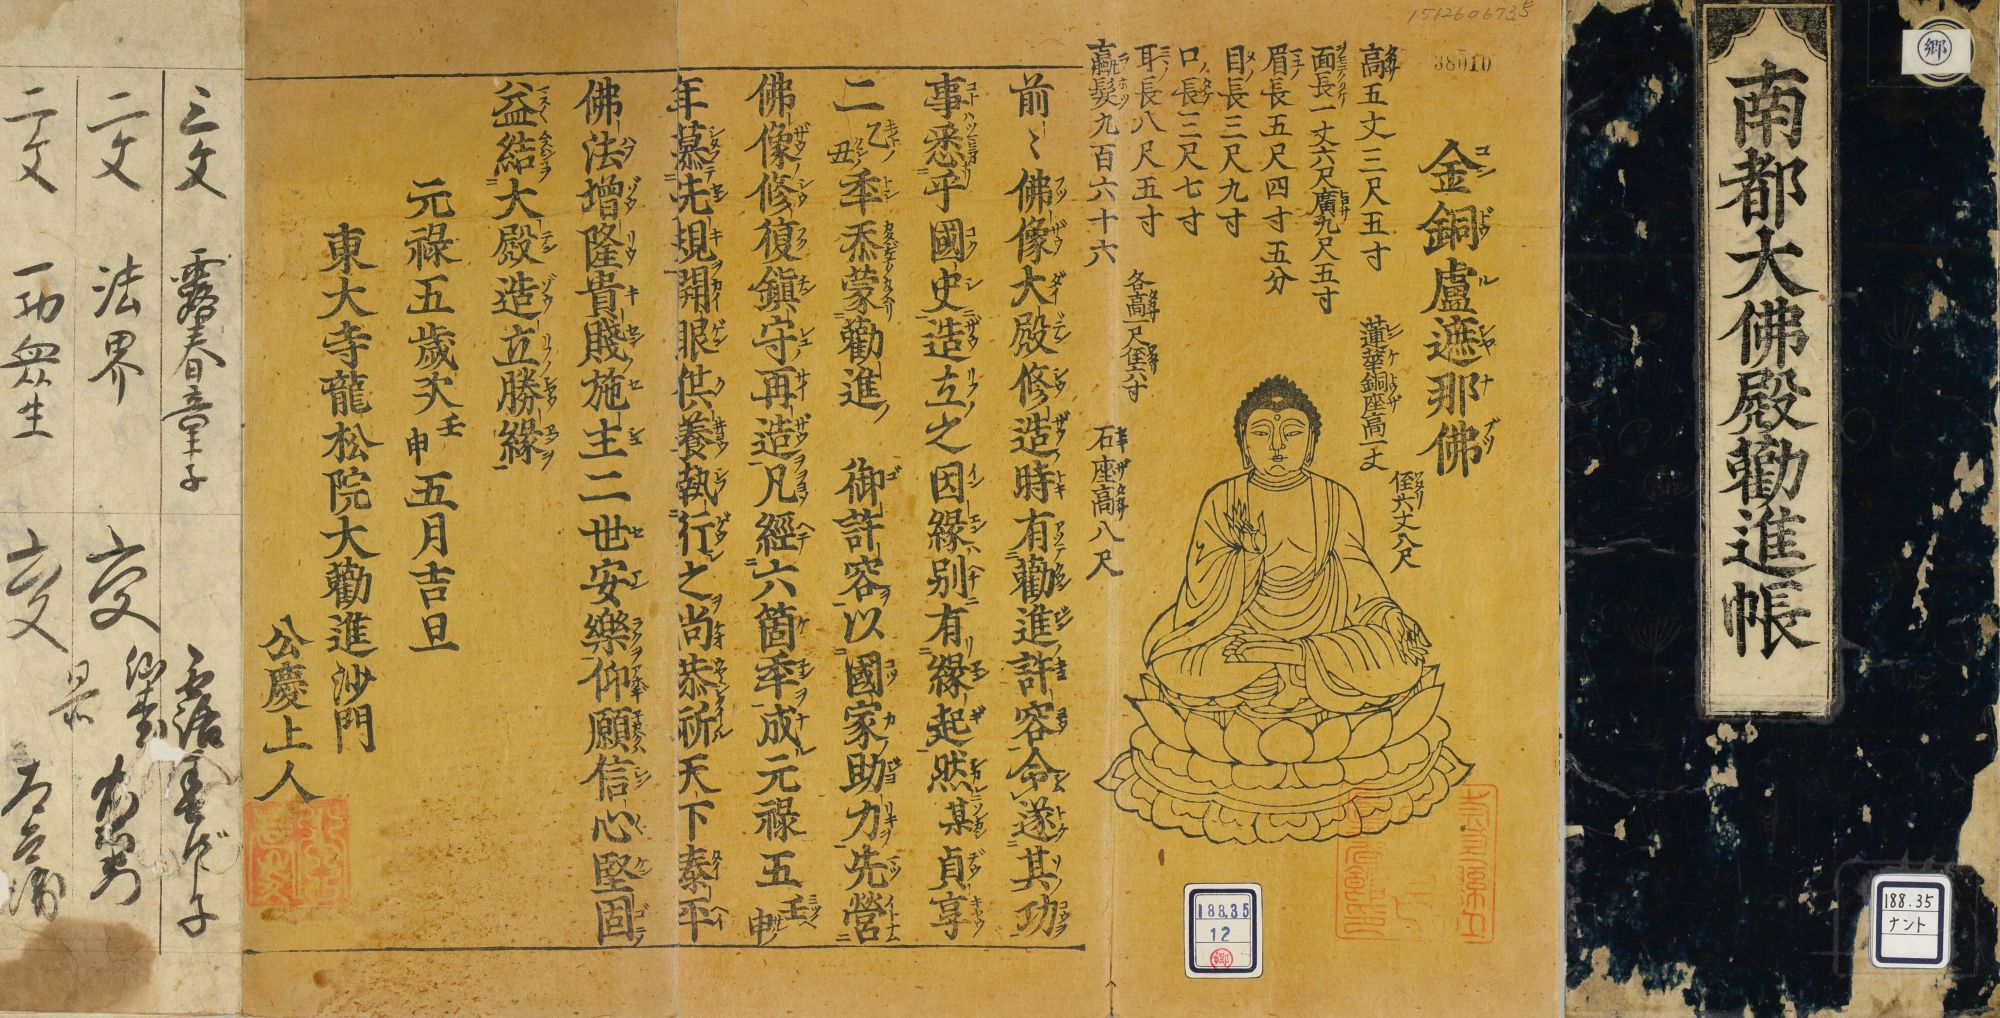 「南都大仏殿勧進帳」（1692年）部分　奈良県立図書情報館蔵